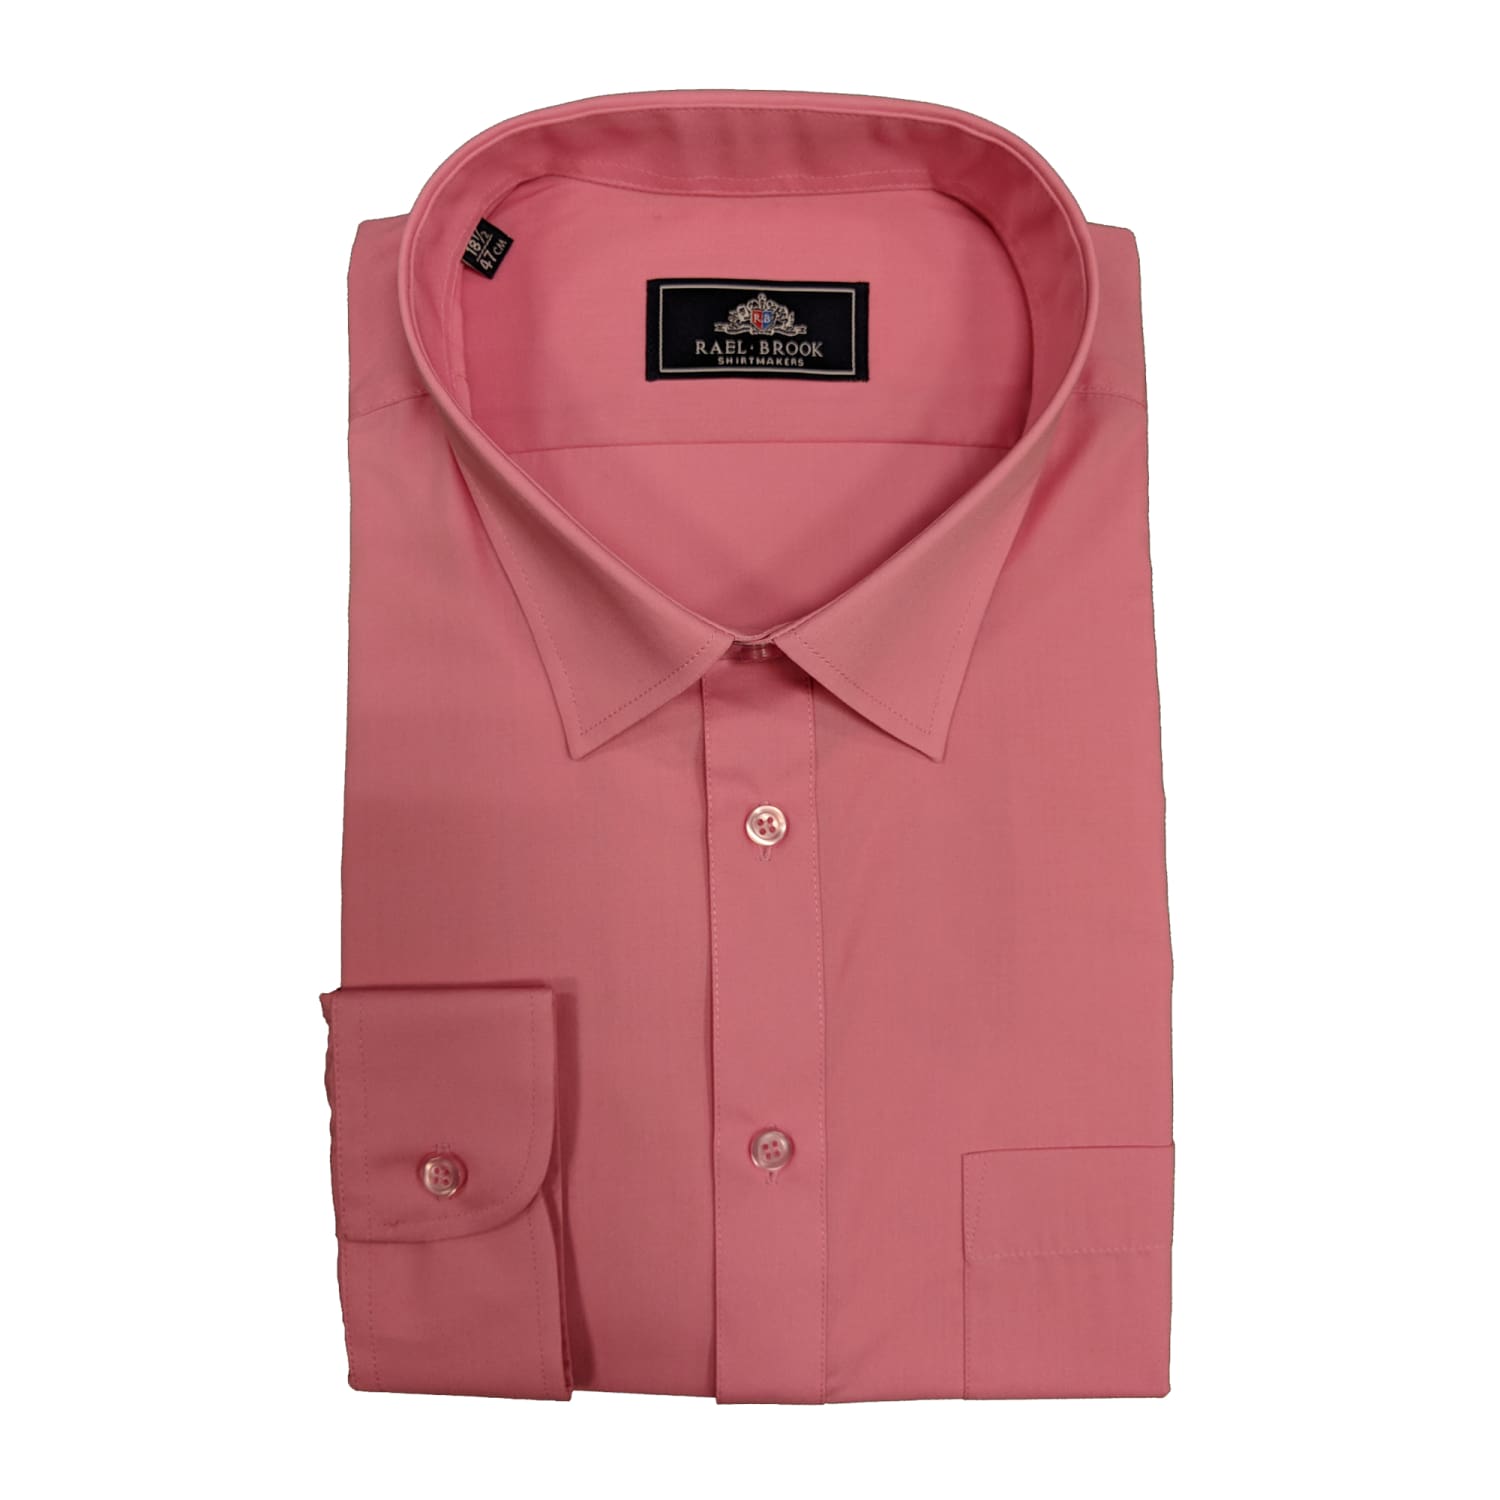 Rael Brook Plain L/S Shirt - 8087 - Rose Pink 1